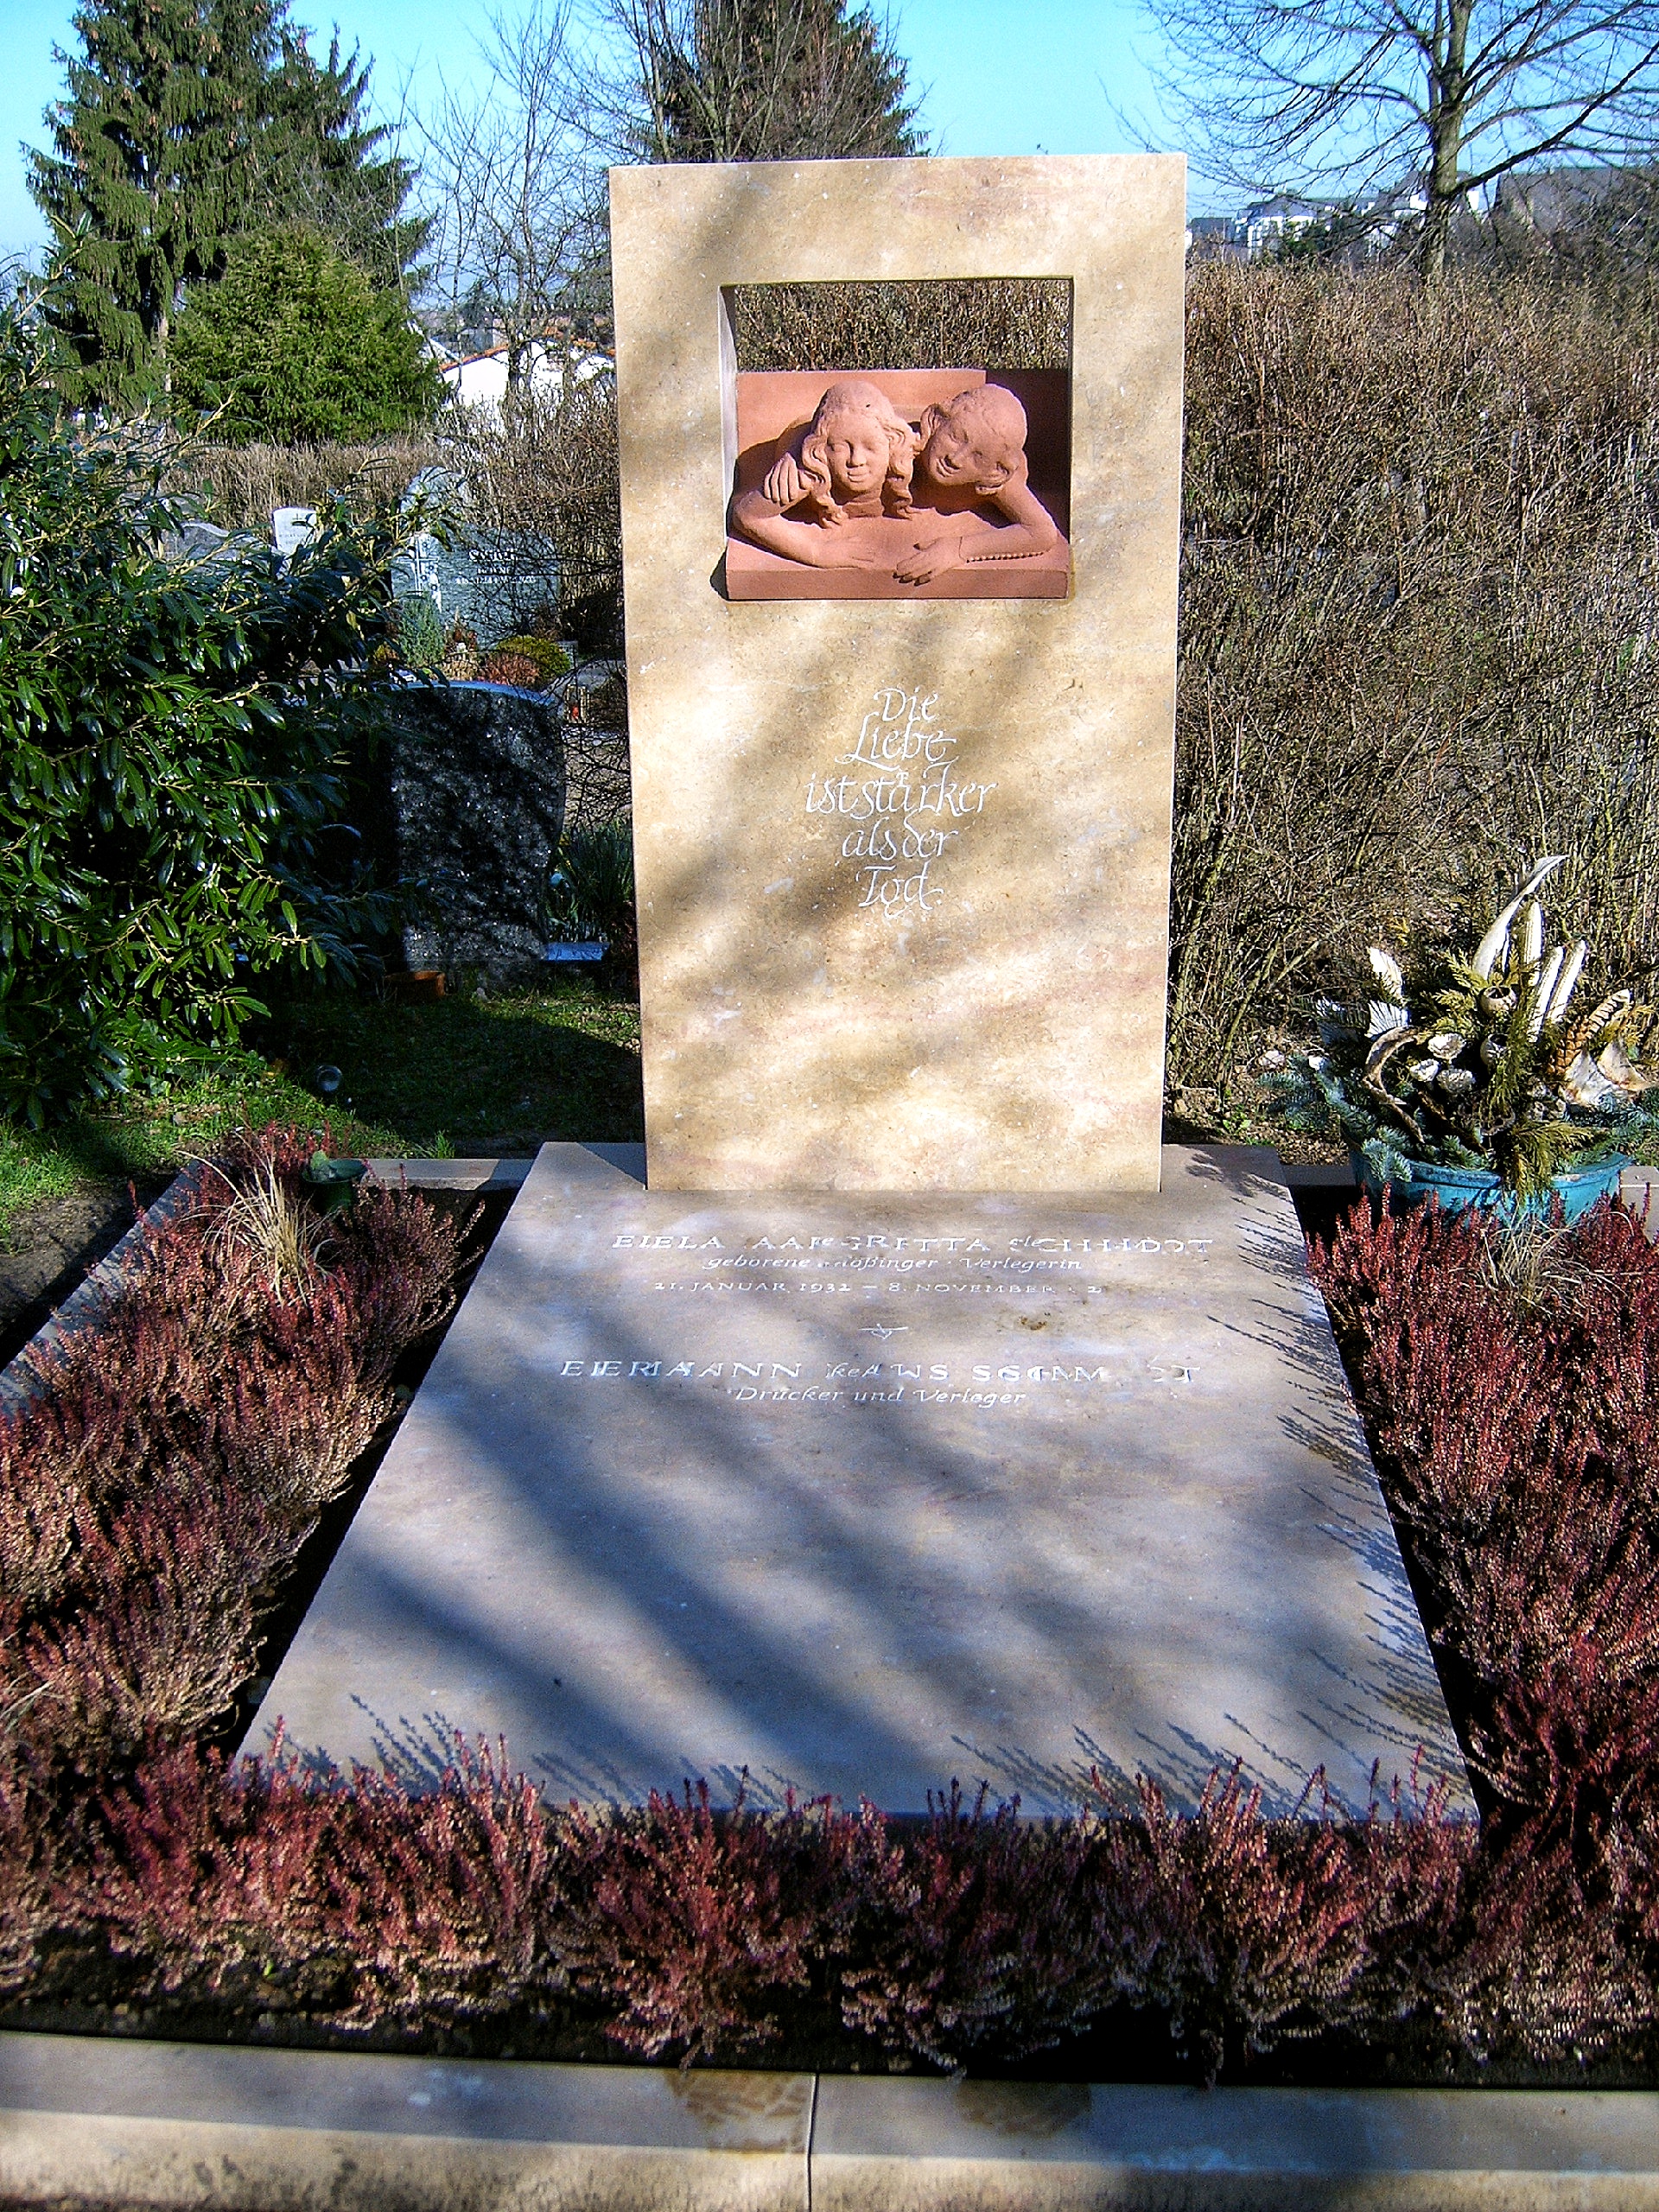 Natursteinatelier Johannes Braum Inhaber Eugen Tomme, Am Waldfriedhof 8 in Mainz